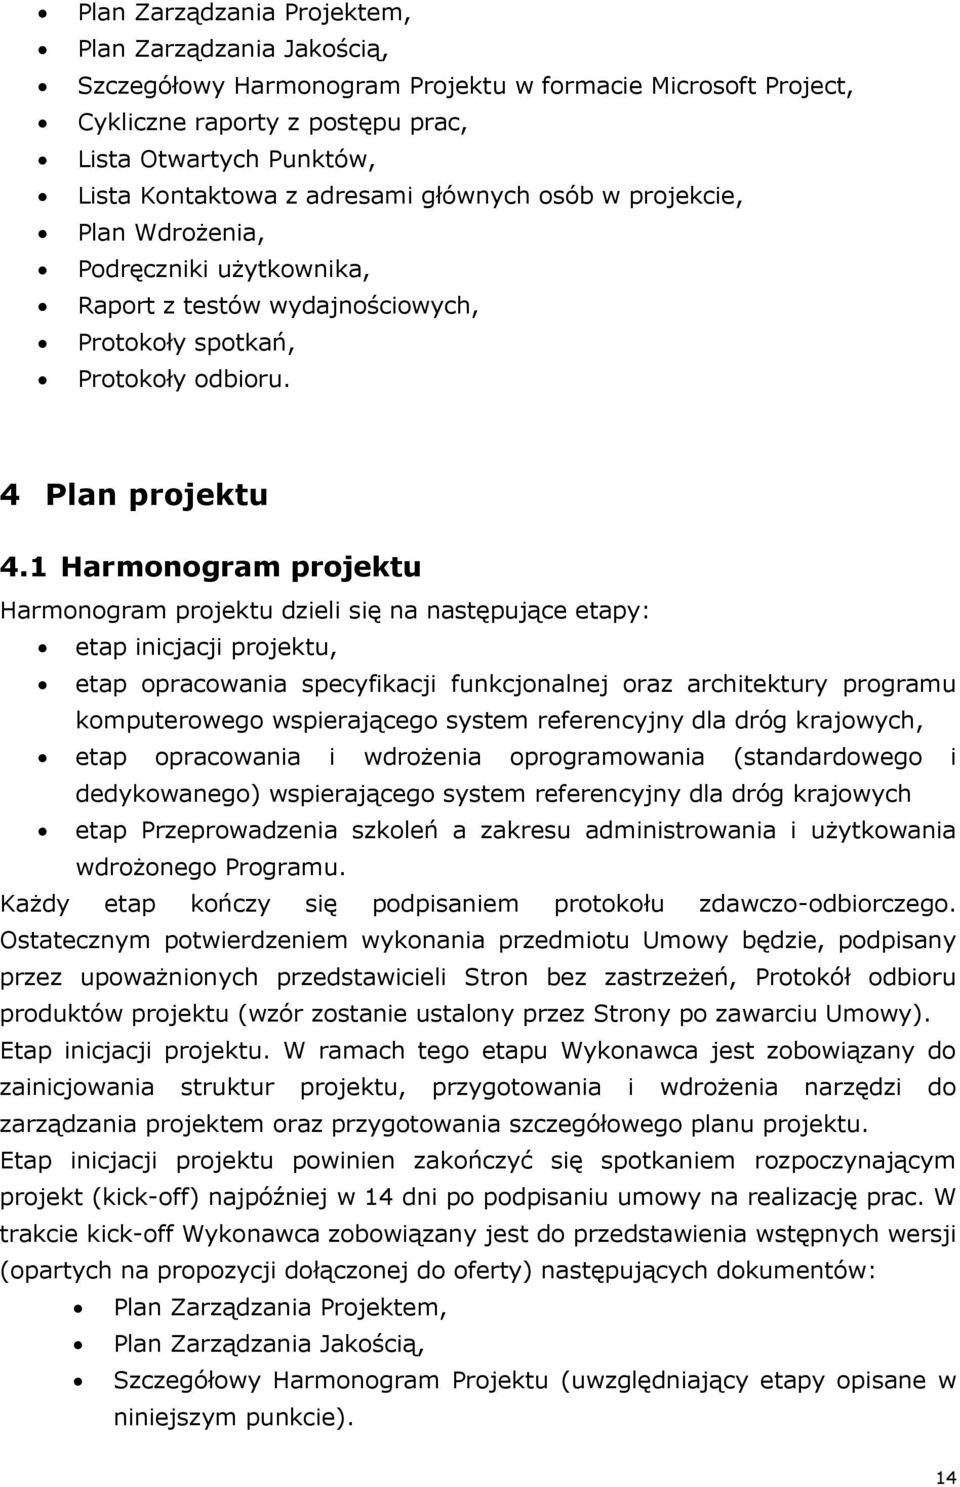 1 Harmonogram projektu Harmonogram projektu dzieli się na następujące etapy: etap inicjacji projektu, etap opracowania specyfikacji funkcjonalnej oraz architektury programu komputerowego